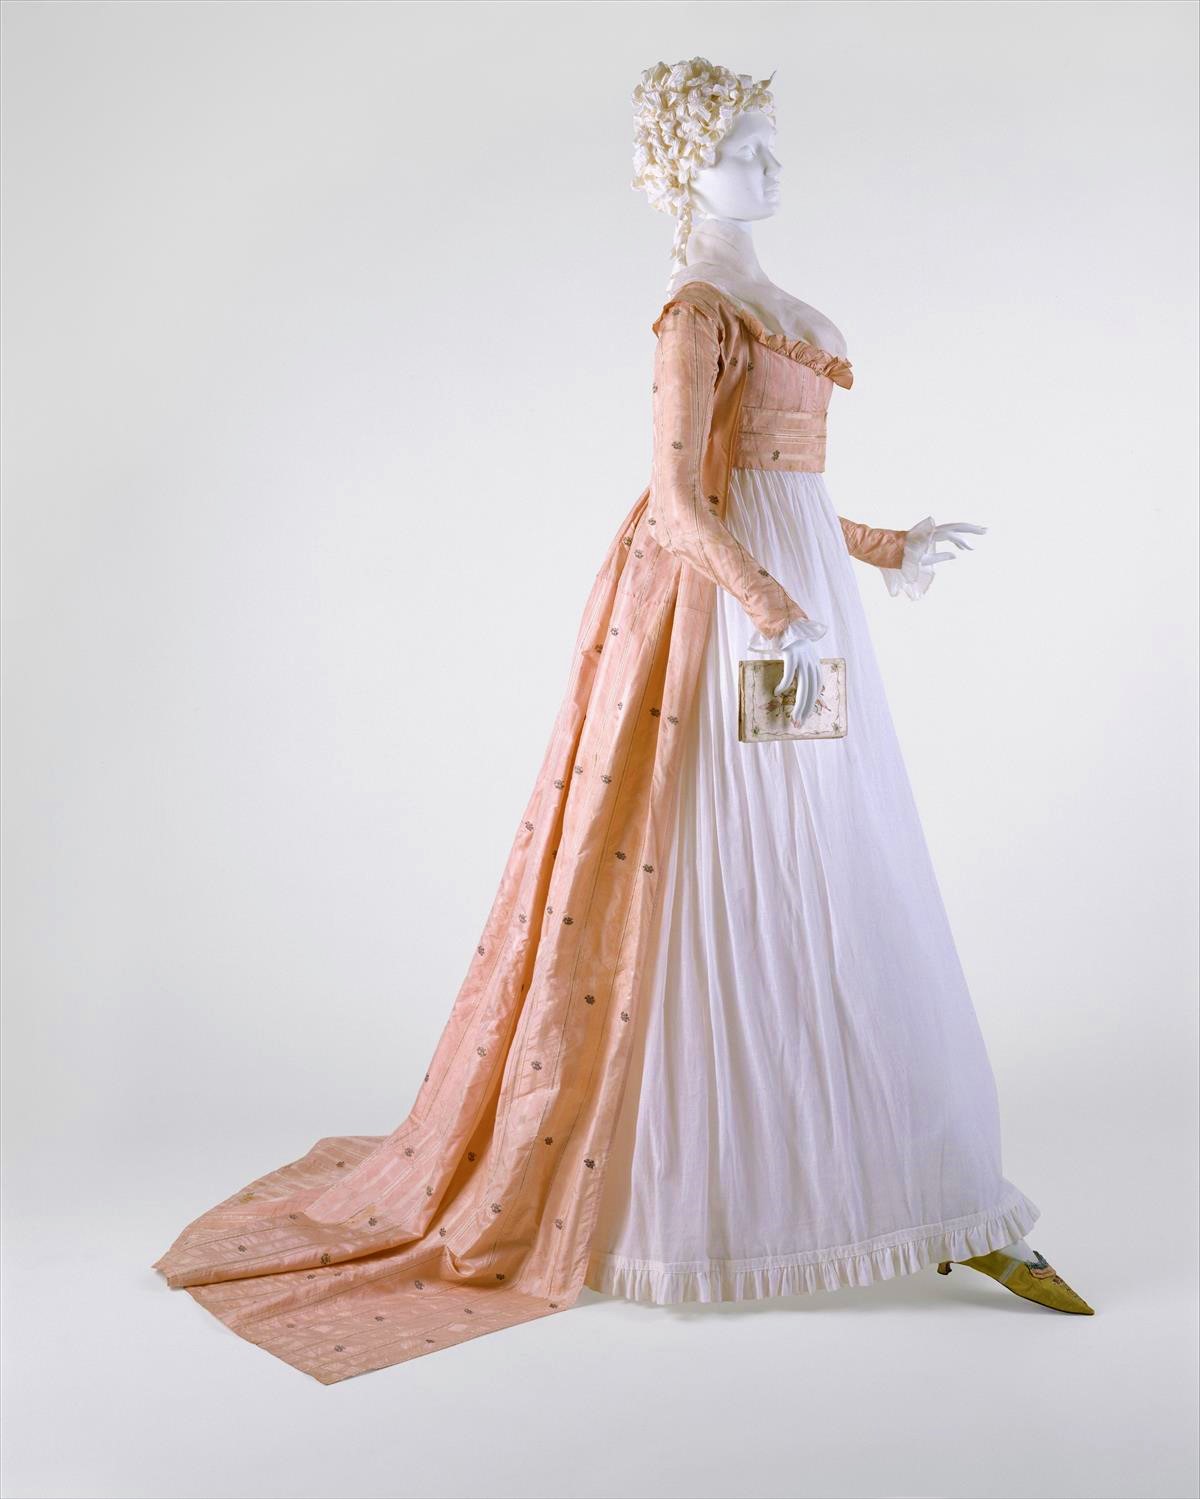 1790s, American, silk. metmuseum